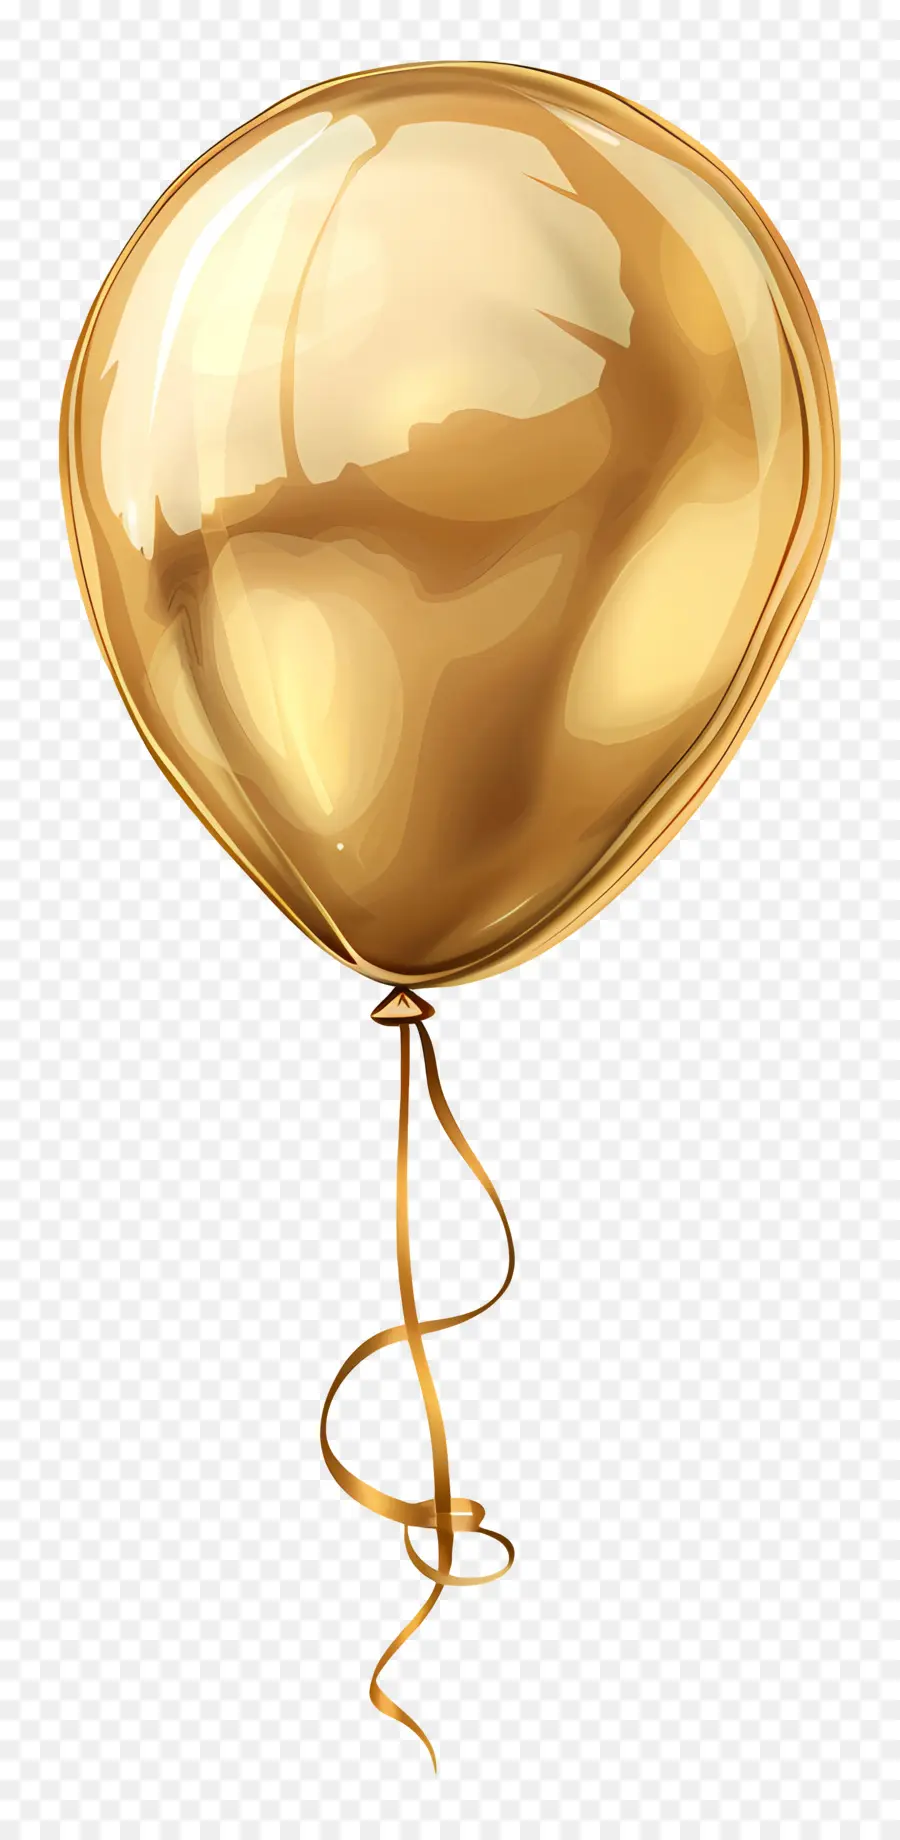 vàng bóng - Khinh khí cầu nổi với chuỗi trong không khí